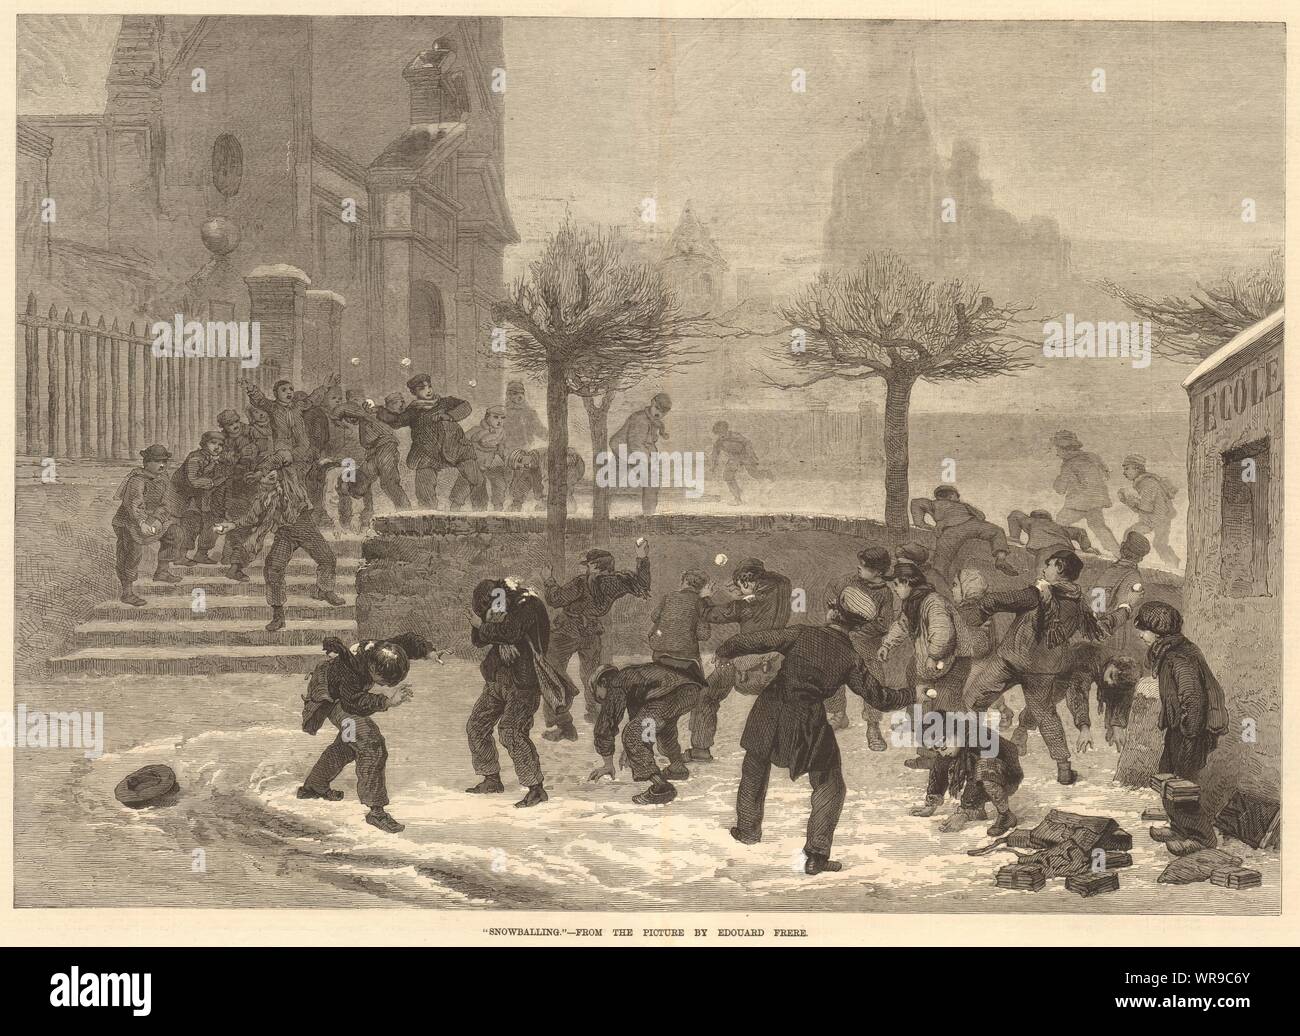 Der nowballing', aus dem Bild von Edouard Frere. Winter sports 1876 ILN drucken Stockfoto